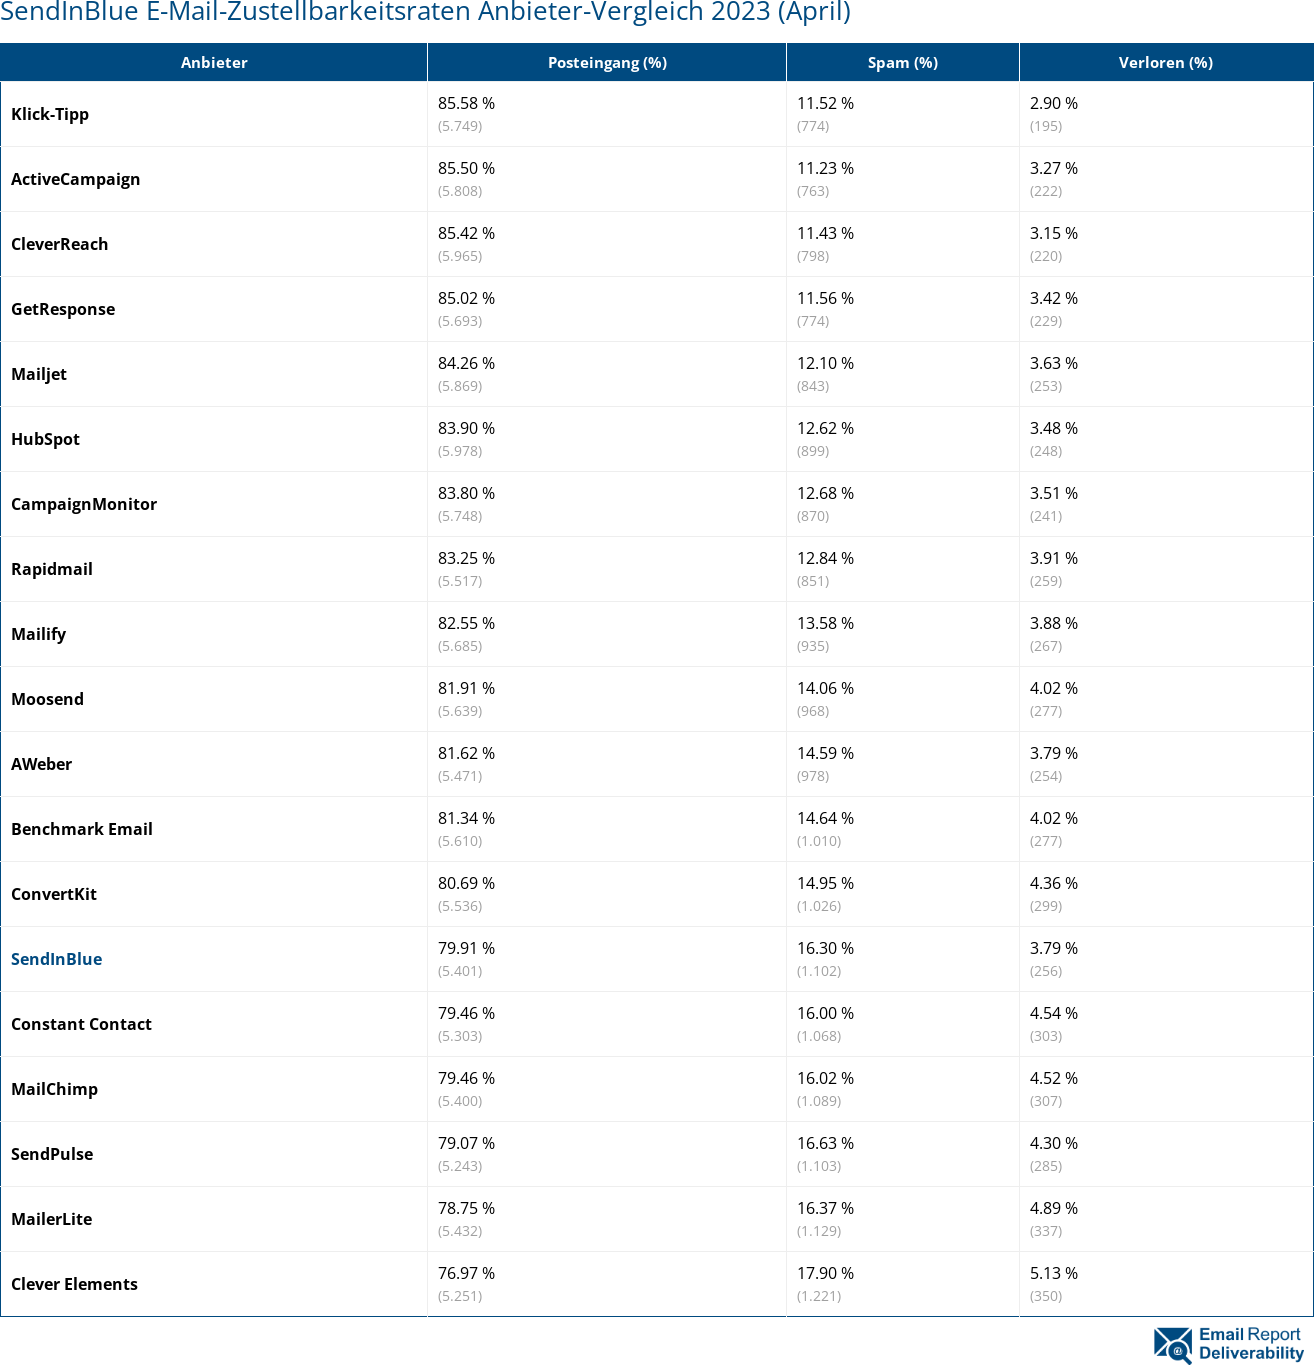 SendInBlue E-Mail-Zustellbarkeitsraten Anbieter-Vergleich 2023 (April)